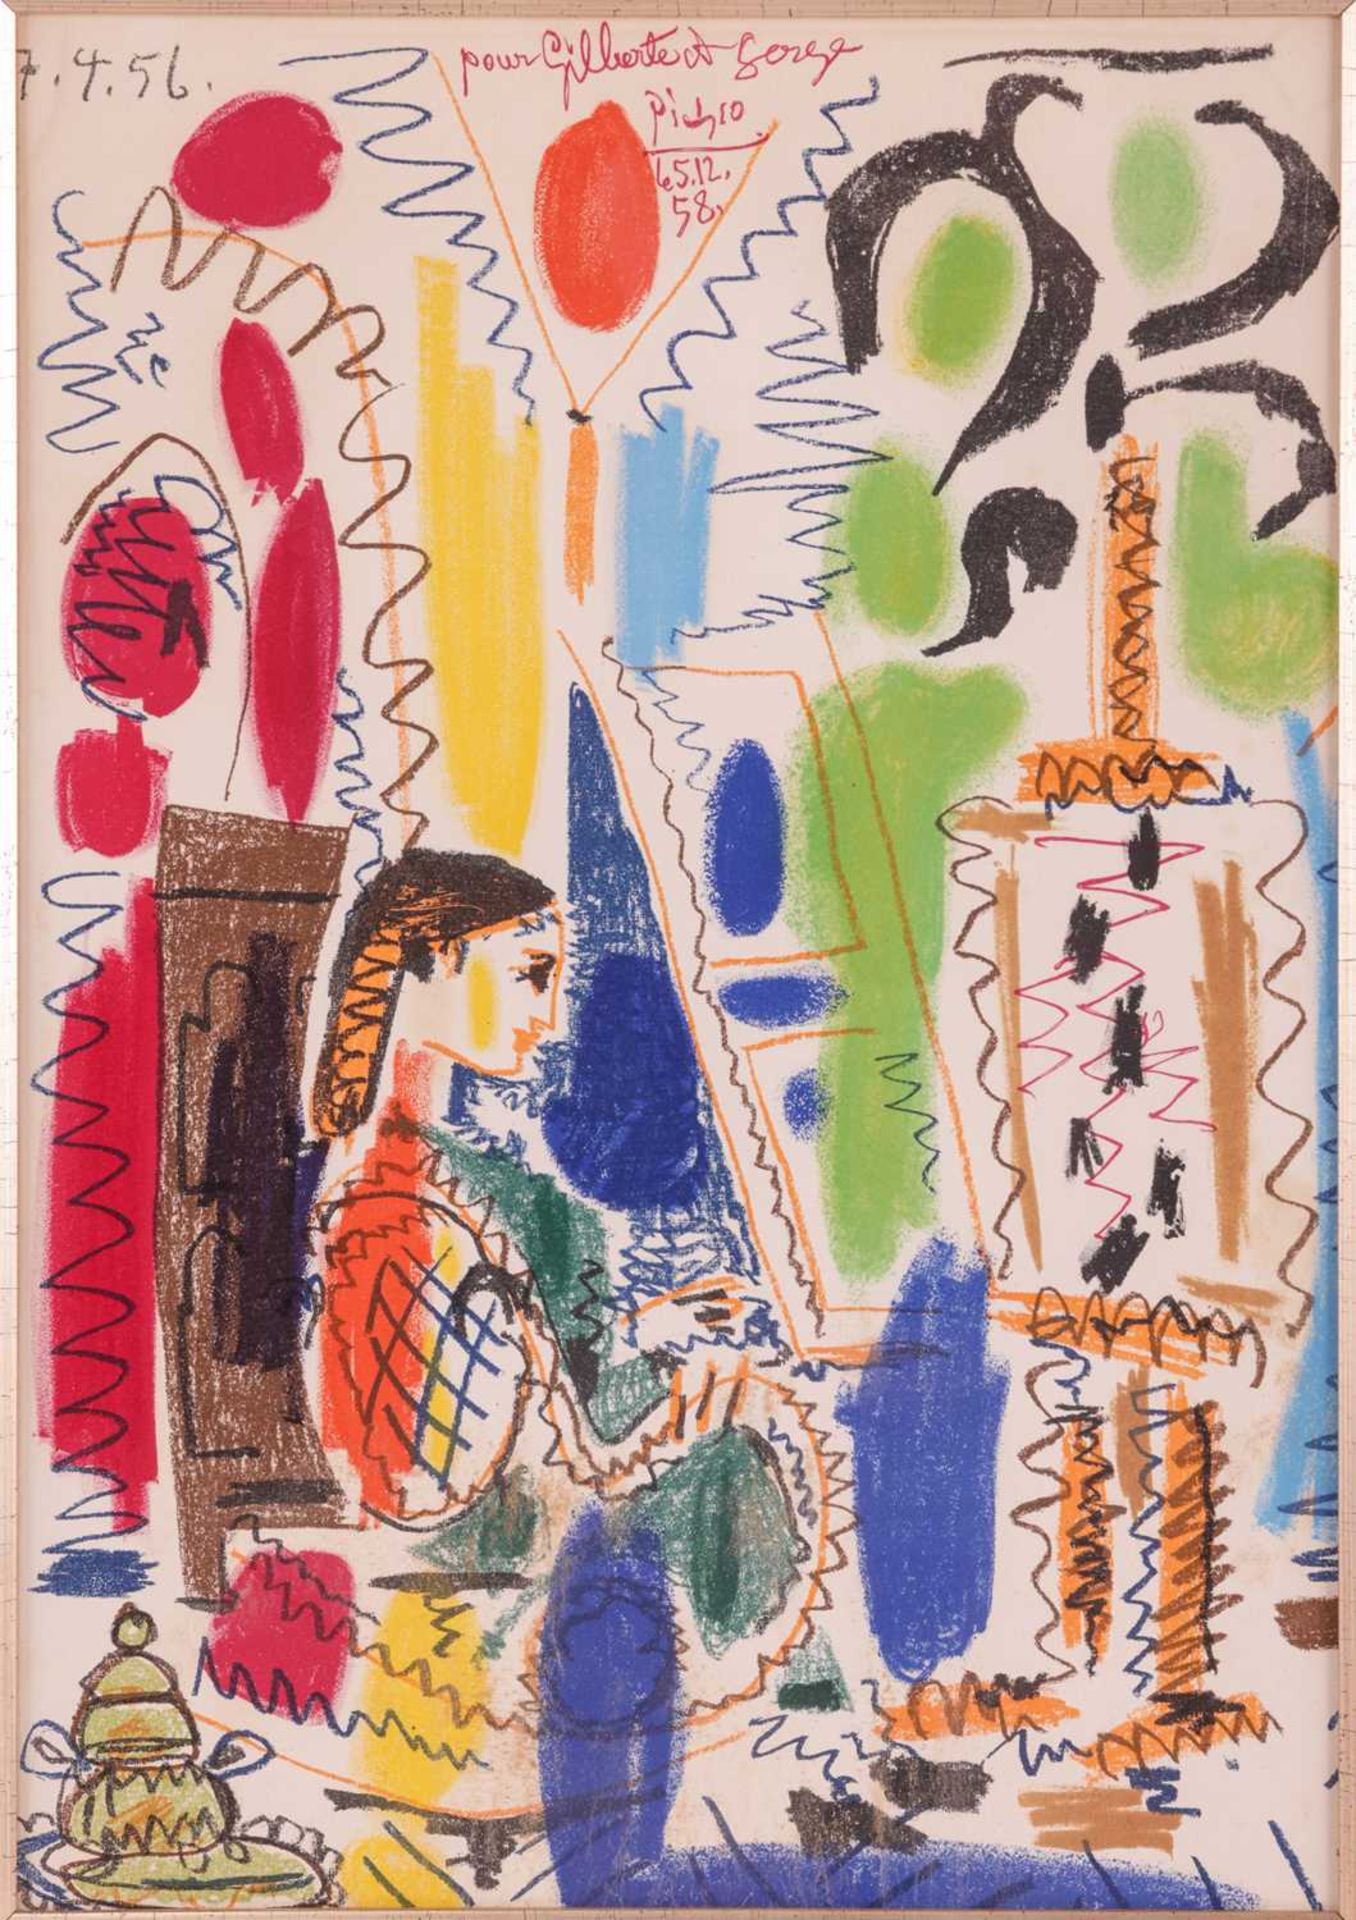 After Pablo Picasso (Spanish, 1881 - 1973), L'Atelier de Cannes (1958), colour lithograph, 43 x 30 c - Image 3 of 17